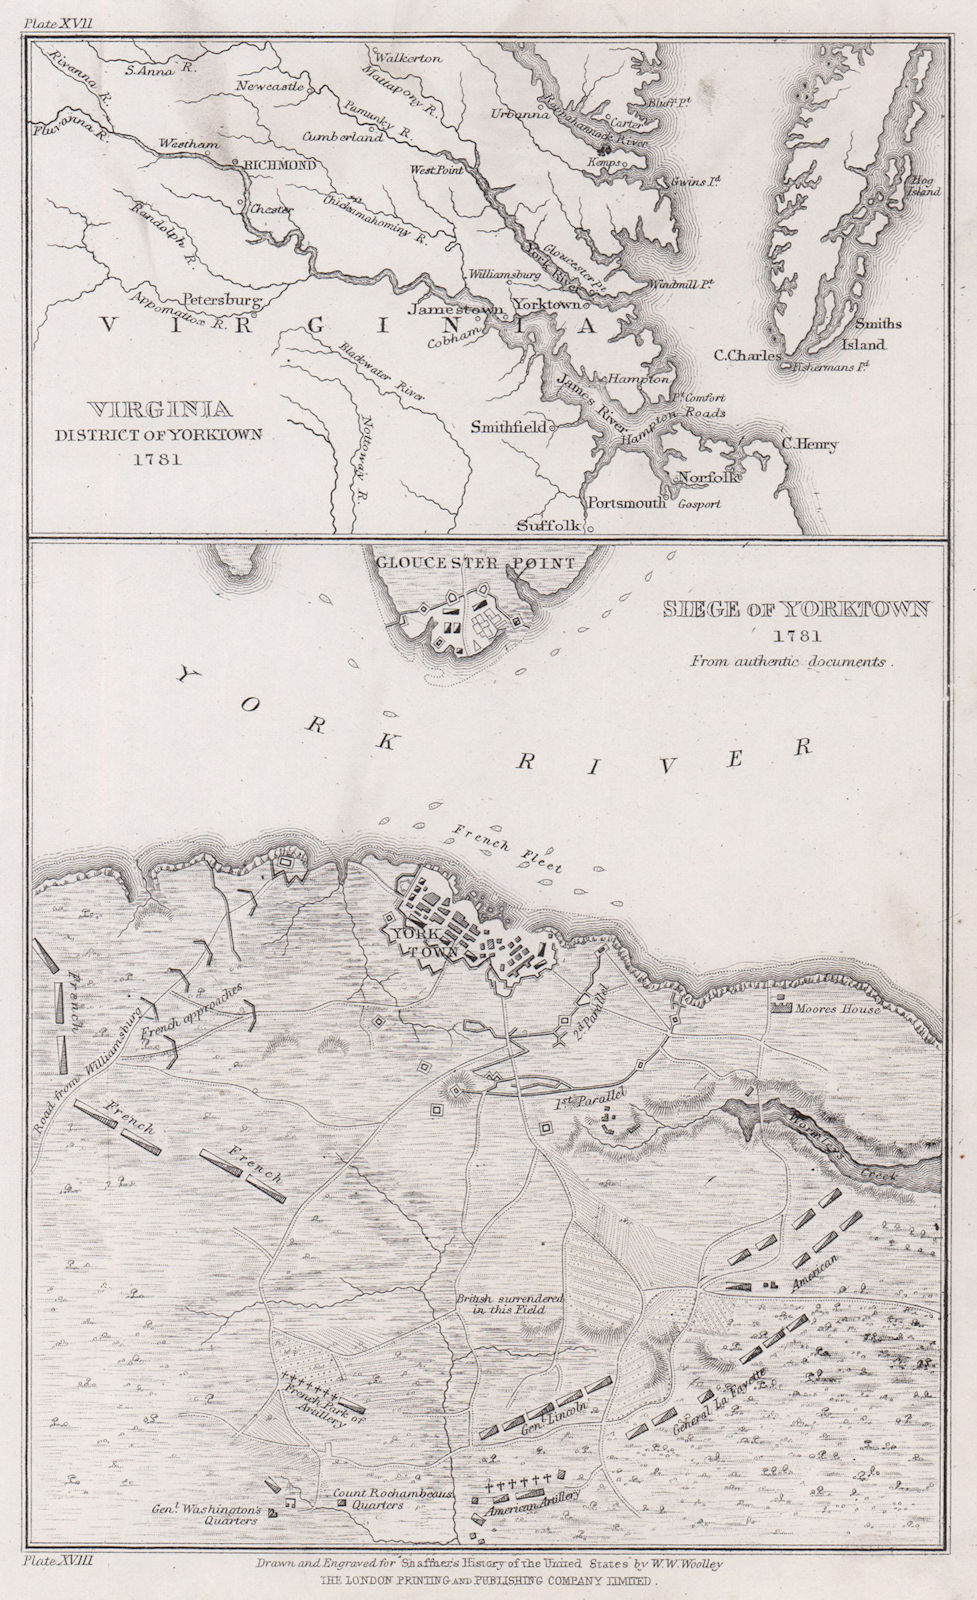 Associate Product Siege of Yorktown 1781. Virginia environs of Yorktown. WOOLLEY 1863 old map